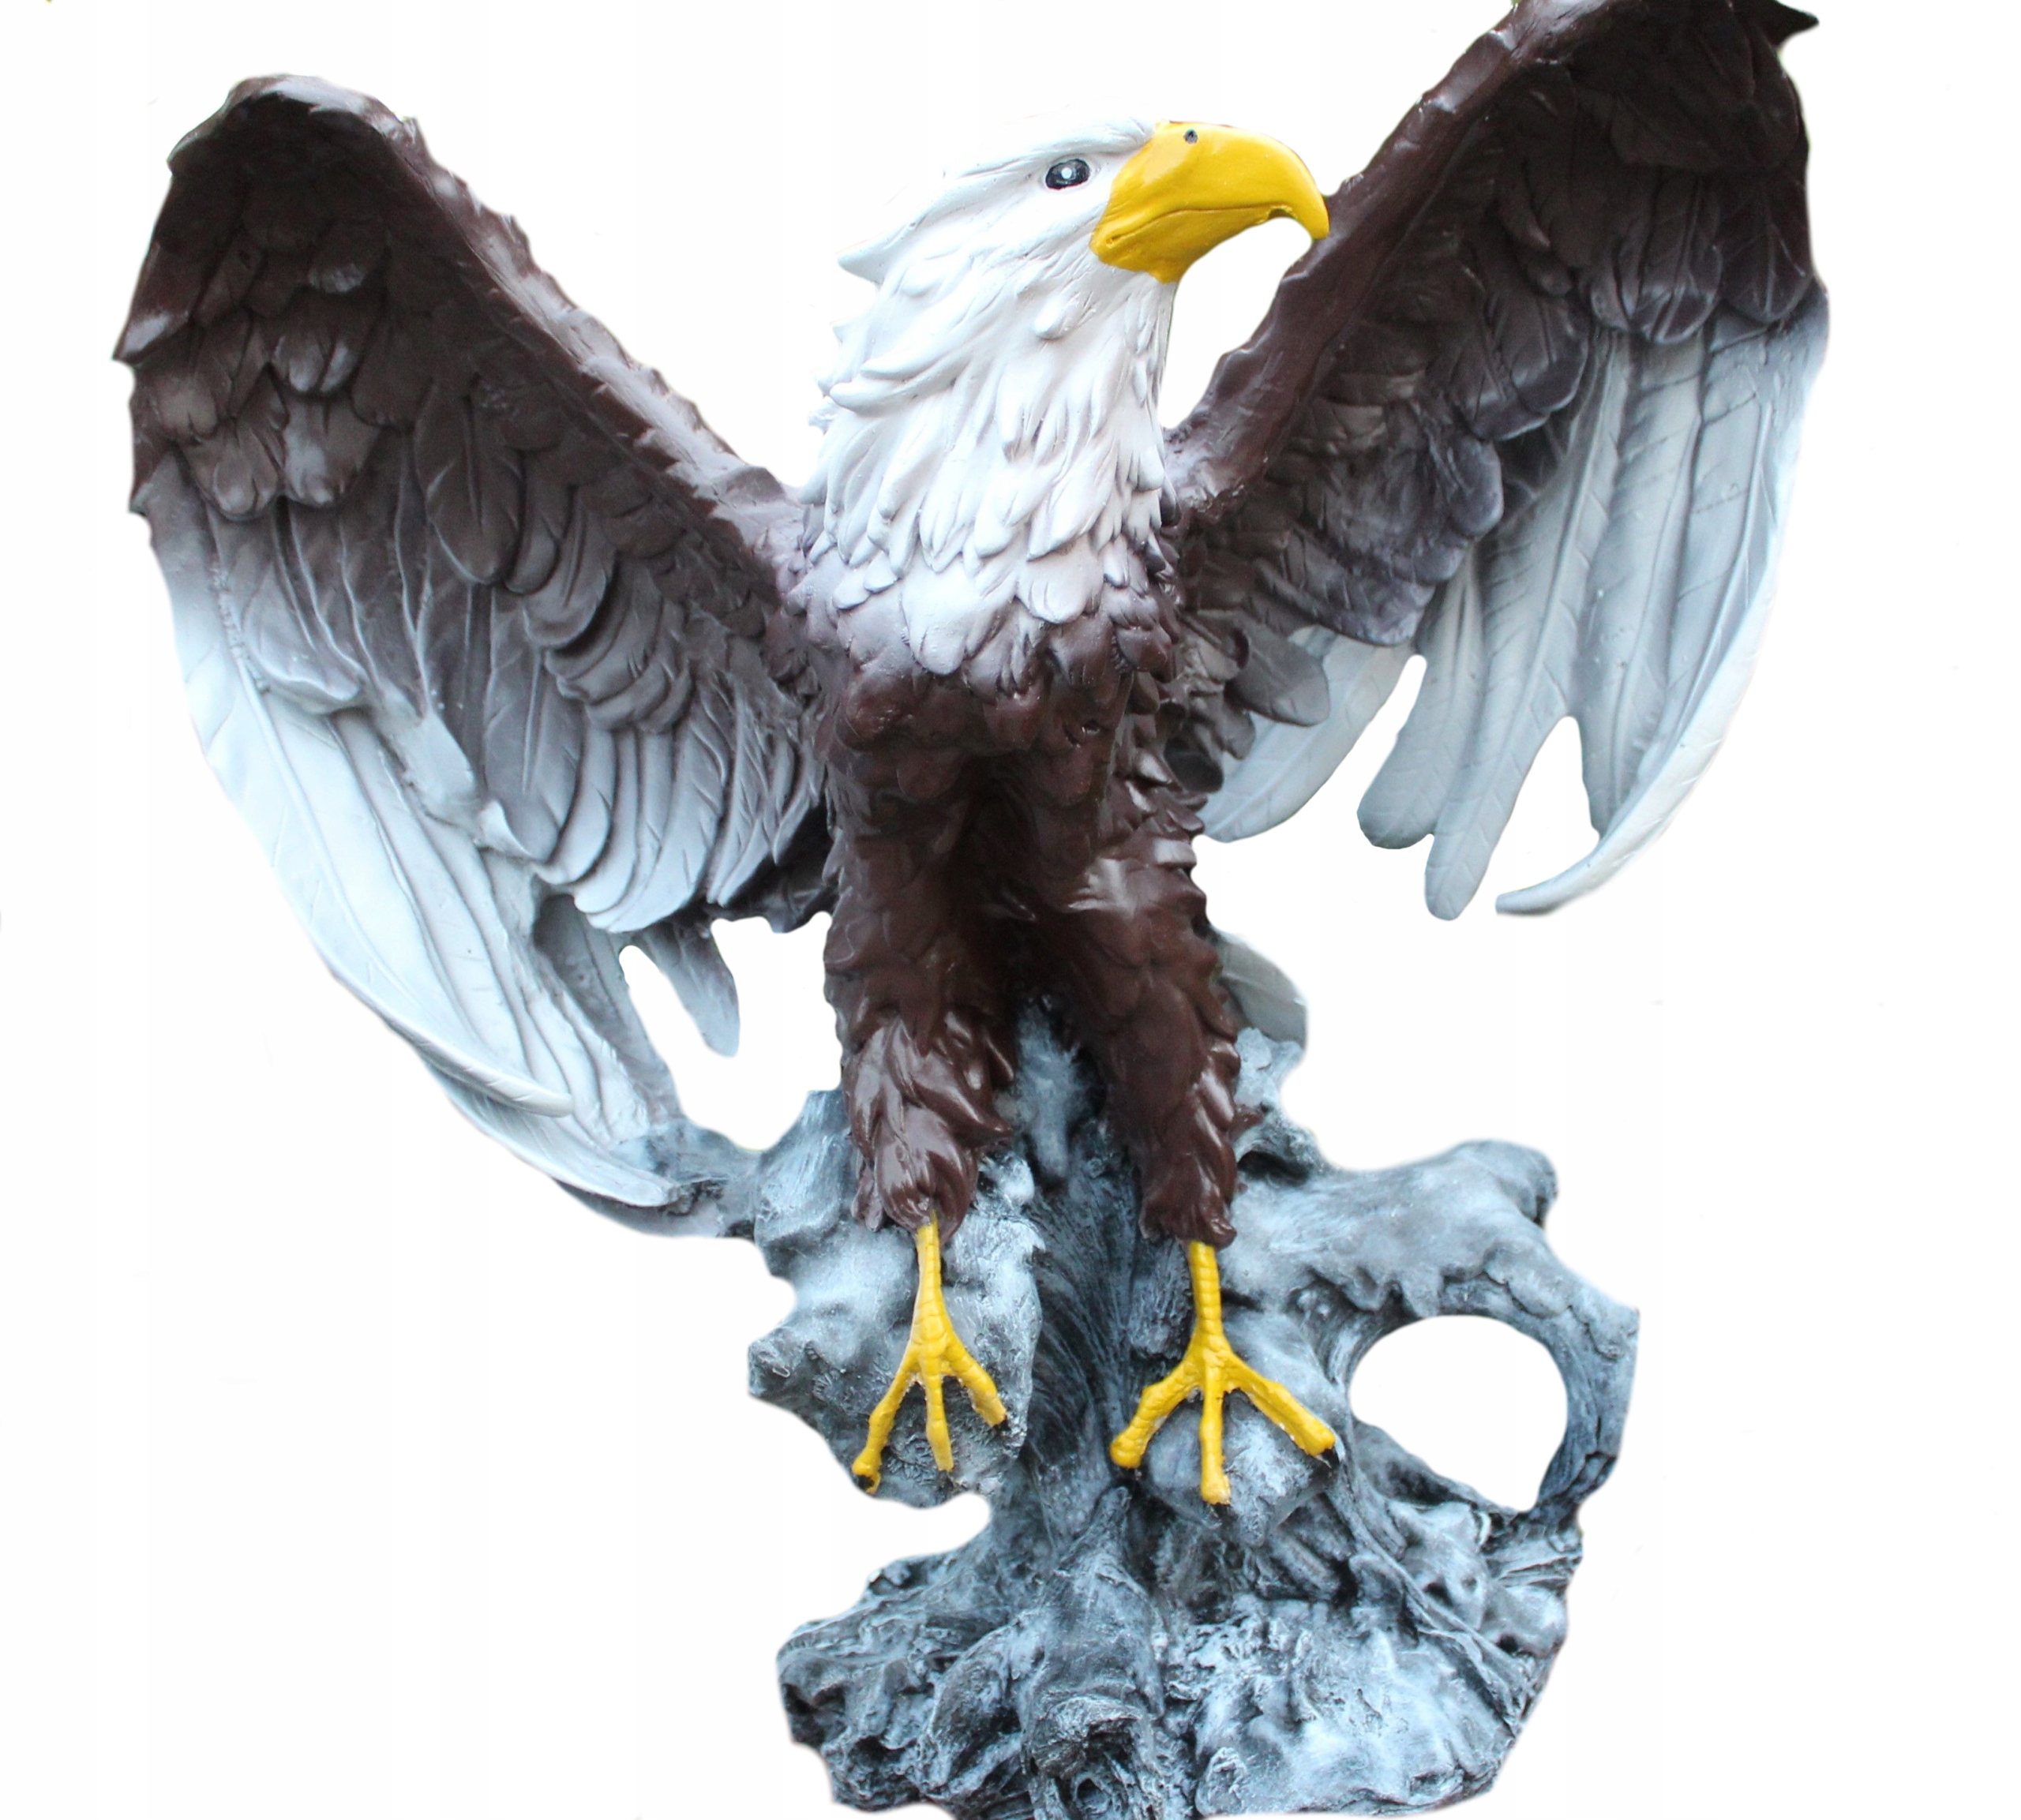 Купить в орле с доставкой. Фигурка Орел. Фигура орла для сада. Садовая фигура Орел. Скульптура орла.